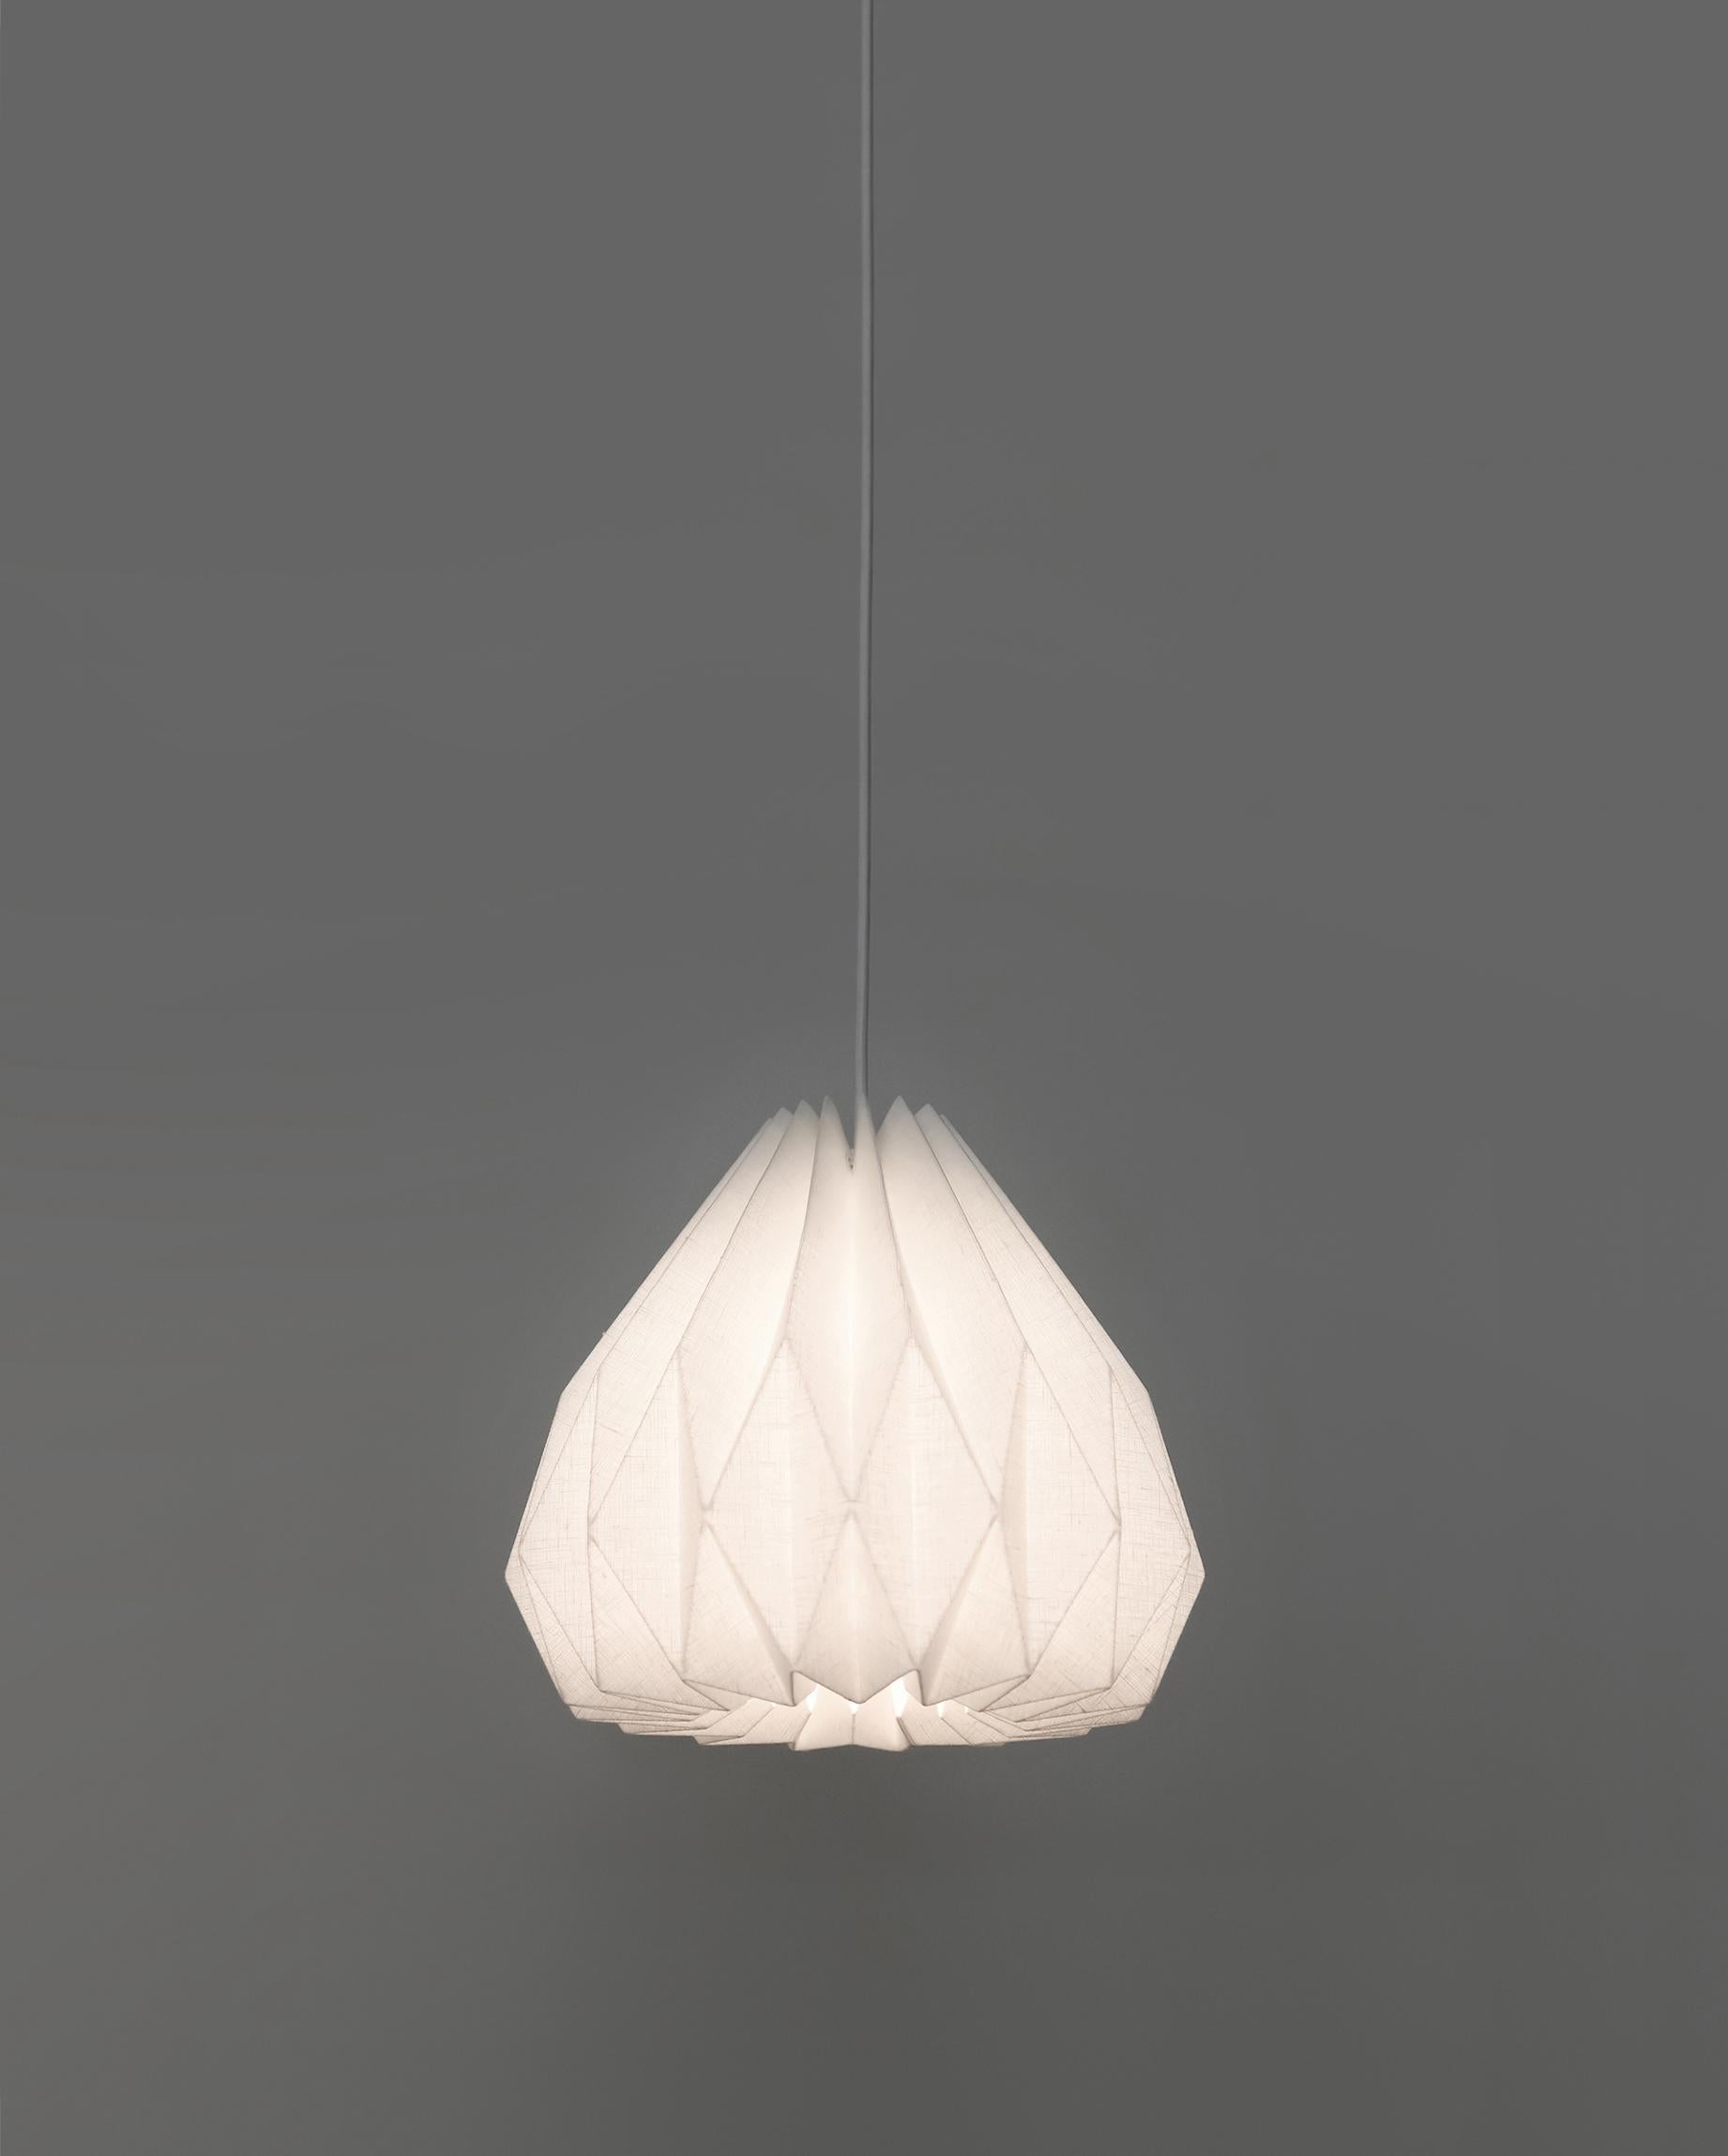 La lampe suspendue de style moderne apportera une œuvre d'art intéressante et fonctionnelle à votre intérieur. L'abat-jour inspiré de l'origami est fabriqué en tissu de lin laminé, ce qui permet d'obtenir une lumière ambiante à la fois claire et